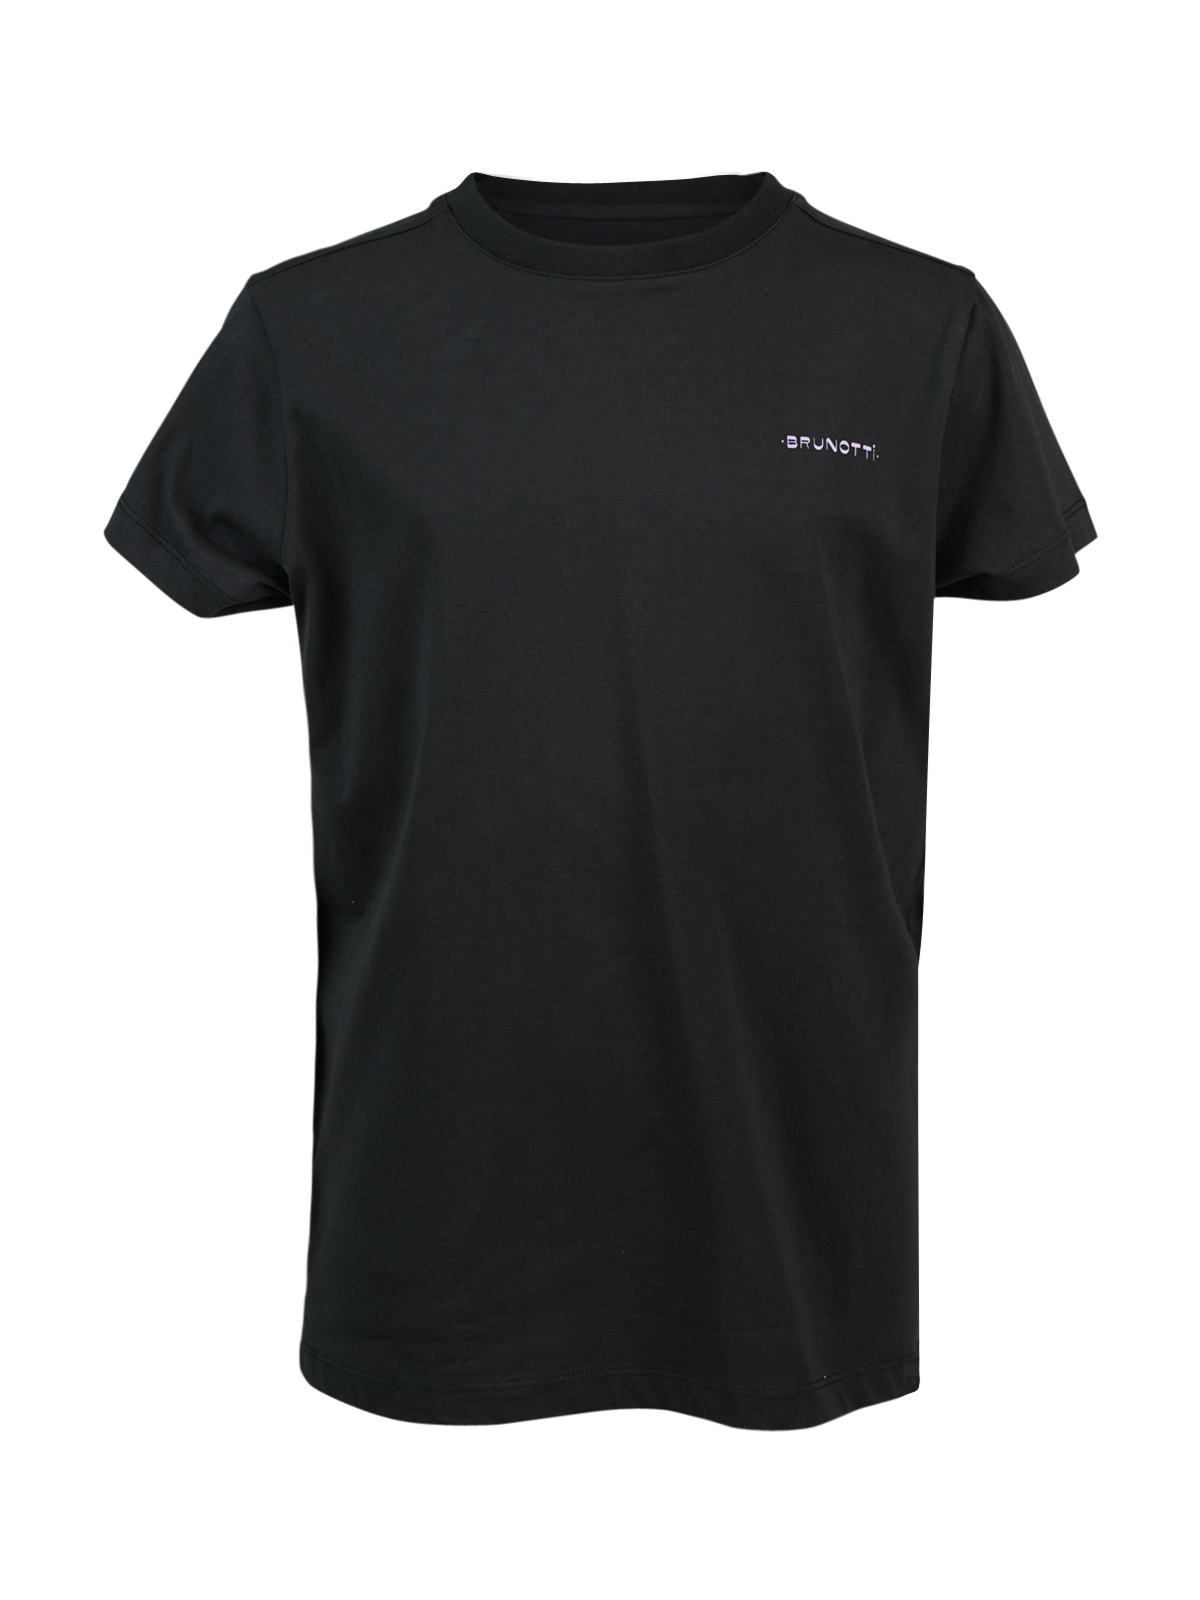 Oval-Mountainy Jungen T-shirt | Schwarz